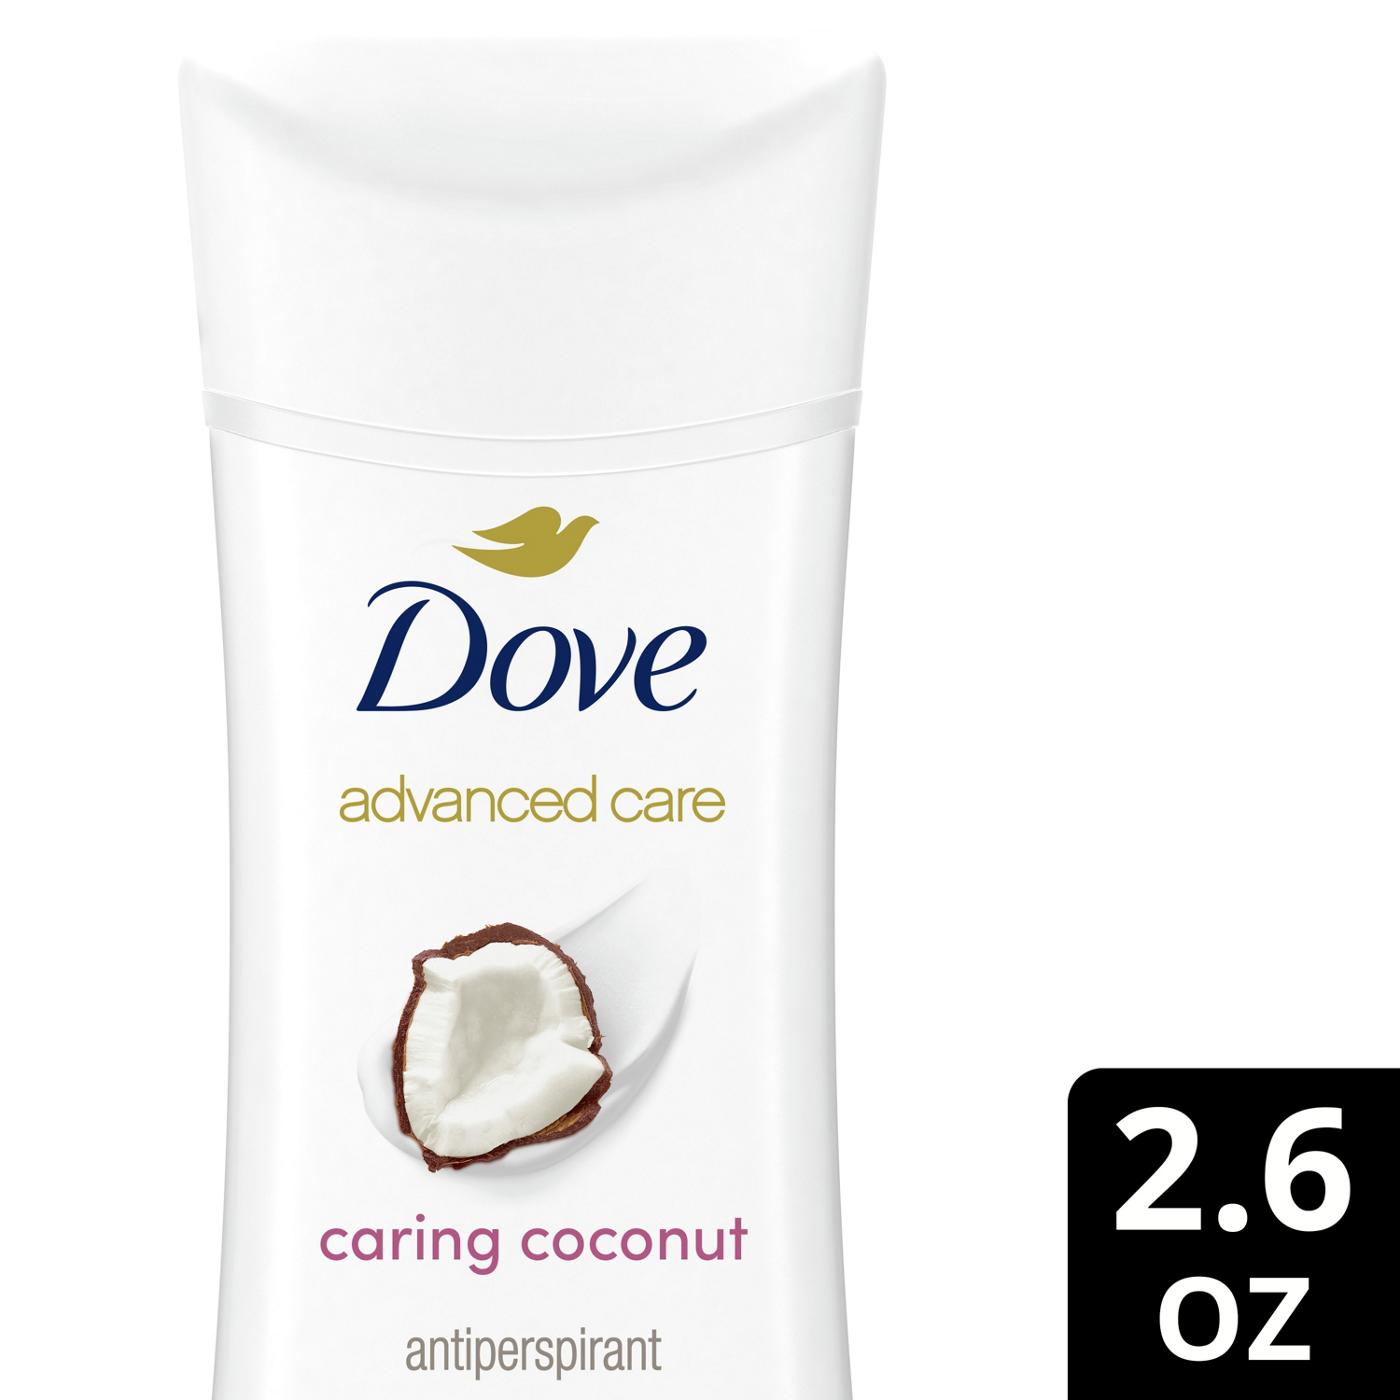 Dove Antiperspirant Deodorant Caring Coconut; image 3 of 4